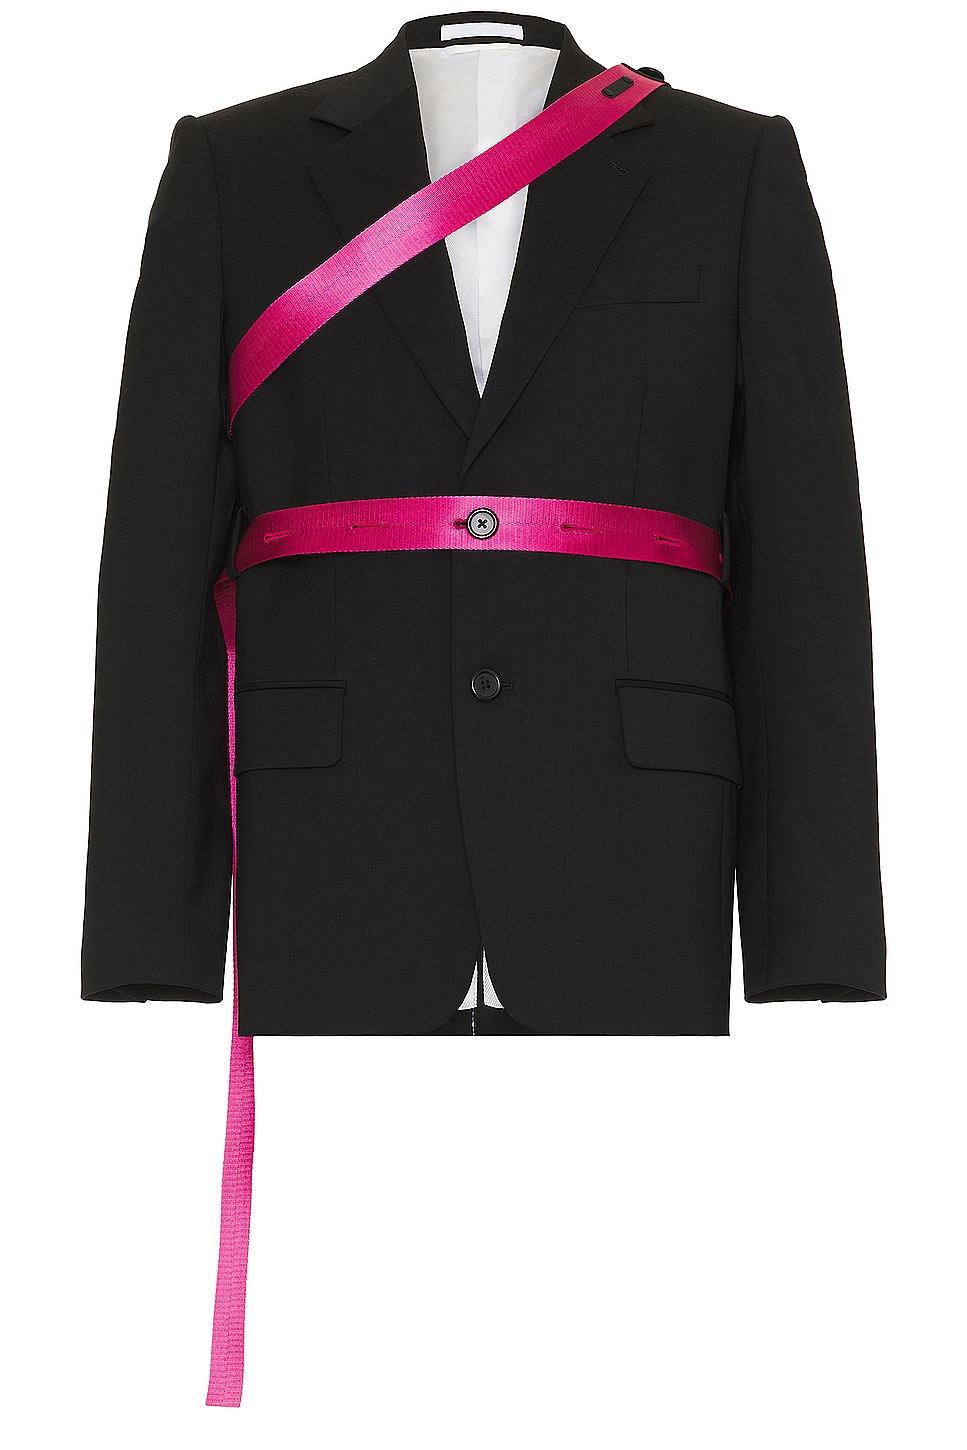 Image 1 of Helmut Lang Seatbelt Blazer in Black & Pink